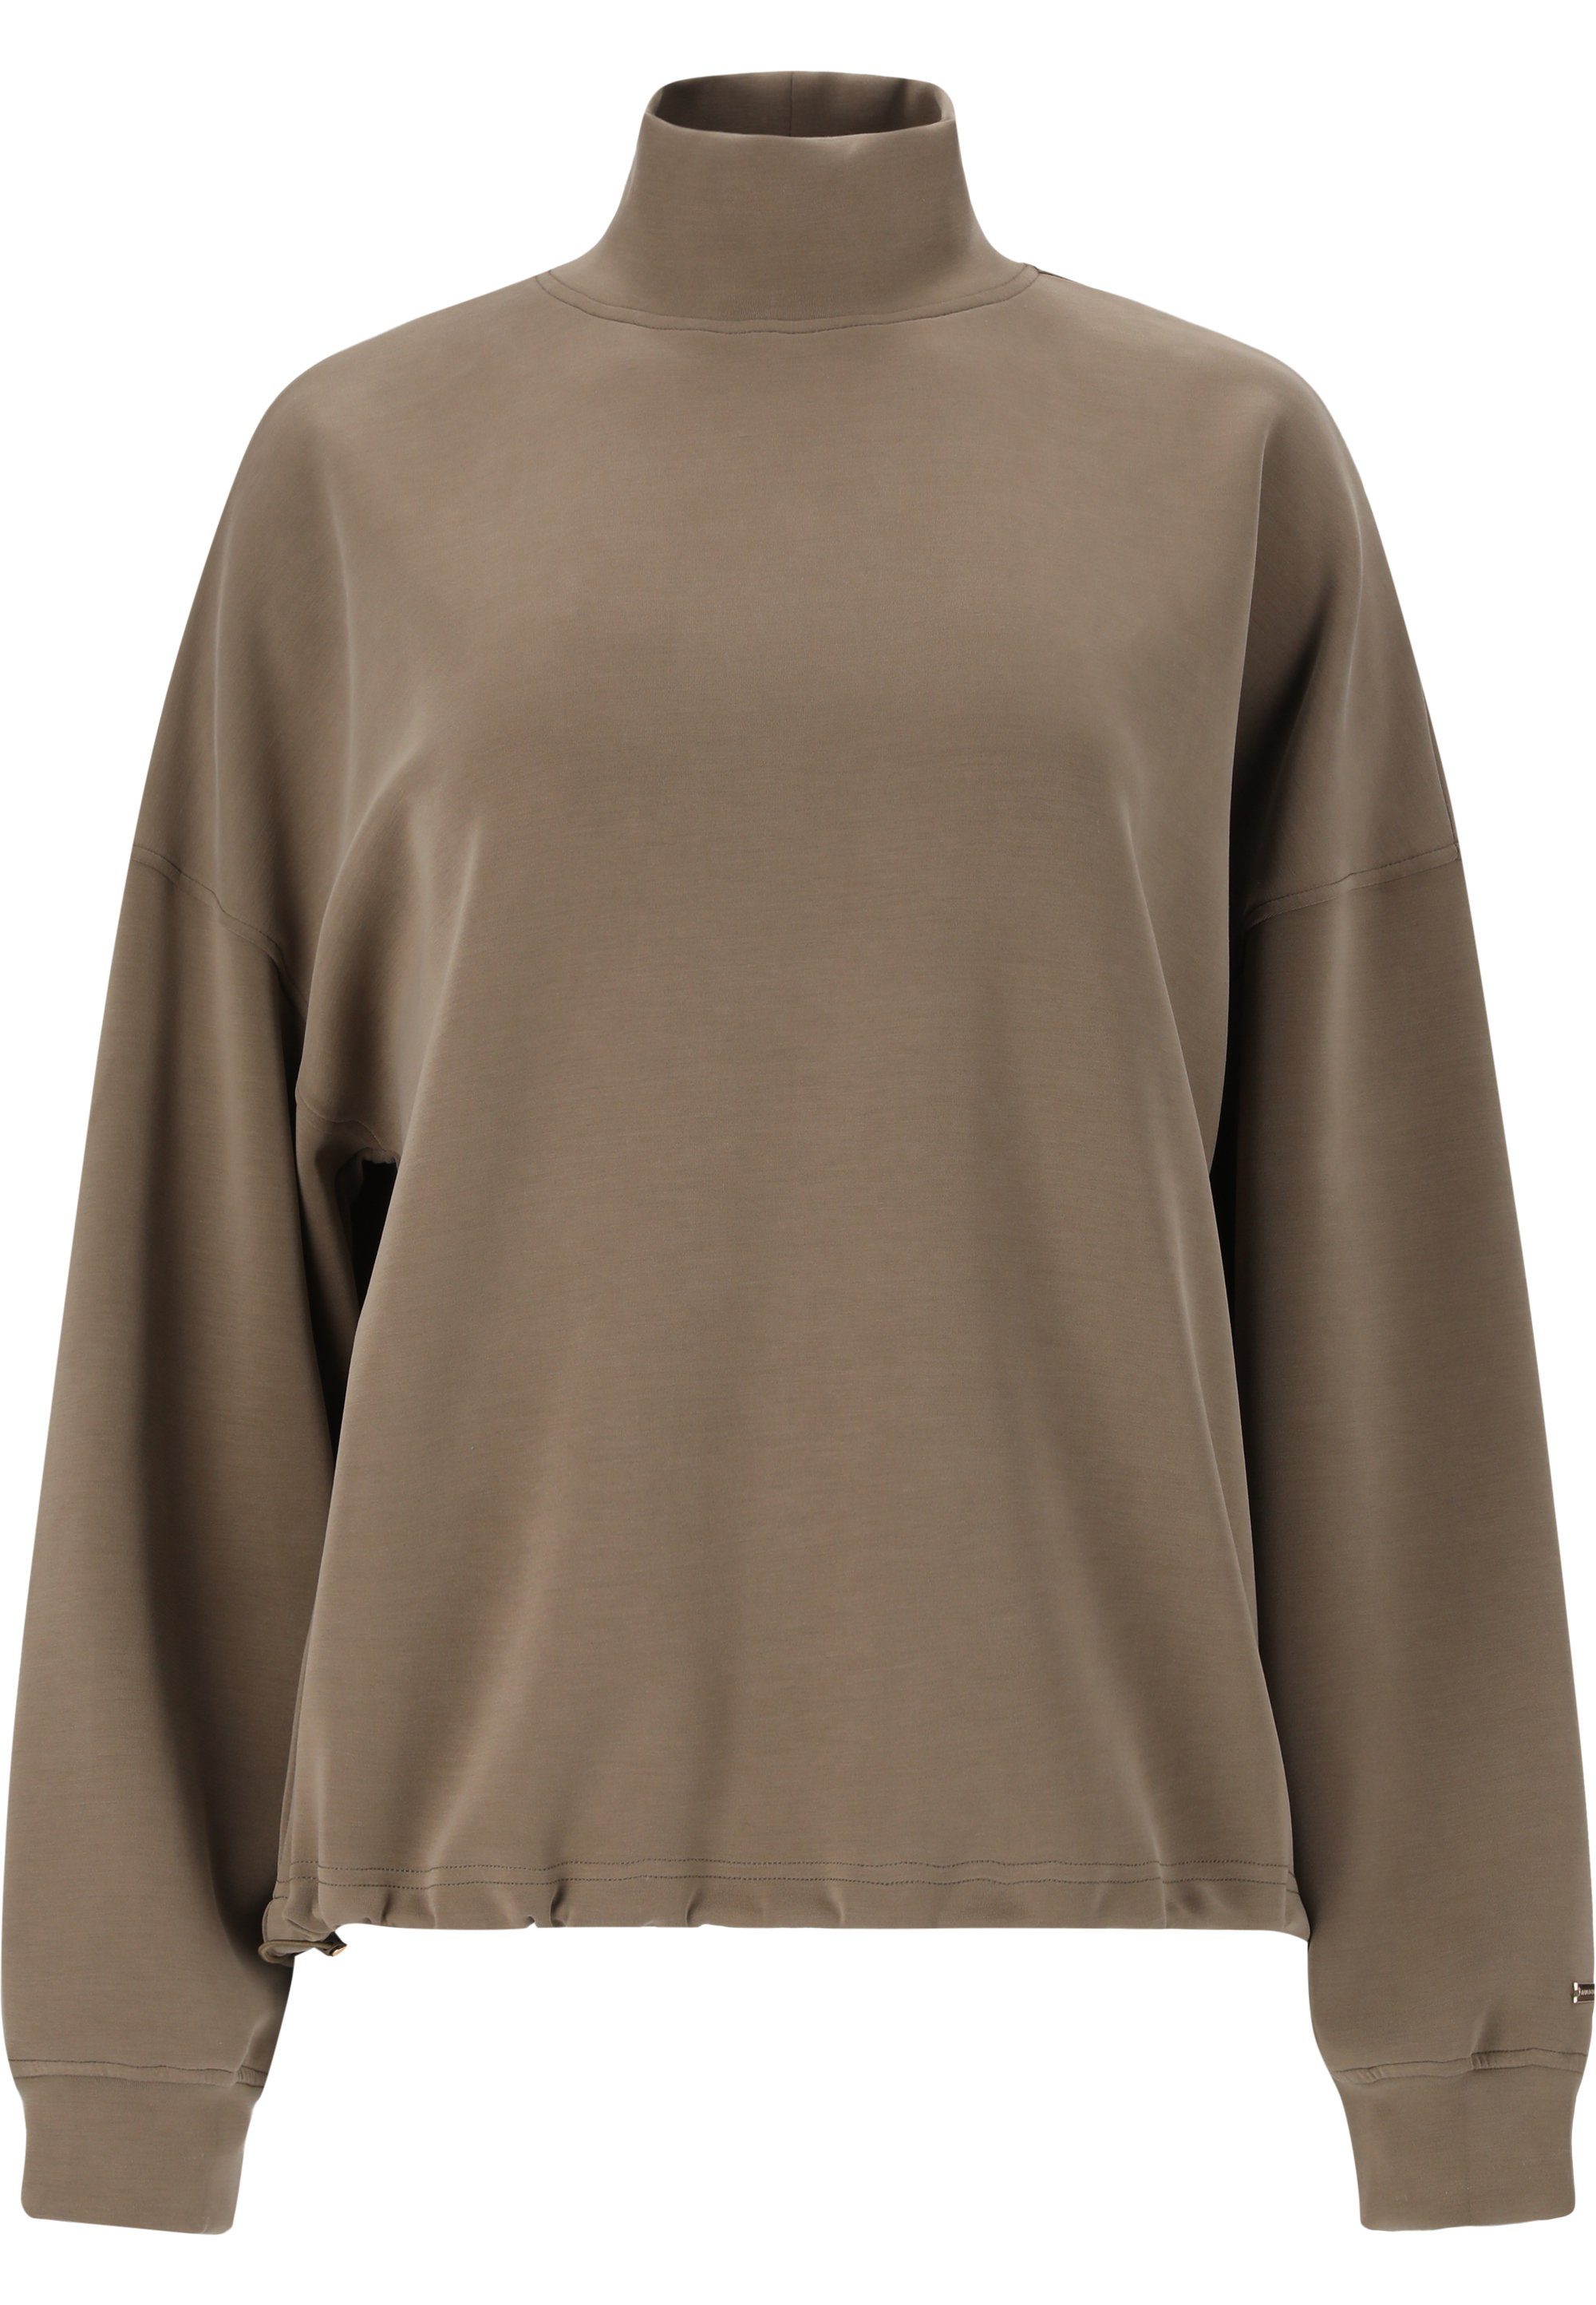 ATHLECIA Sweatshirt Paris mit und camelfarben hohem Tragekomfort Kragen